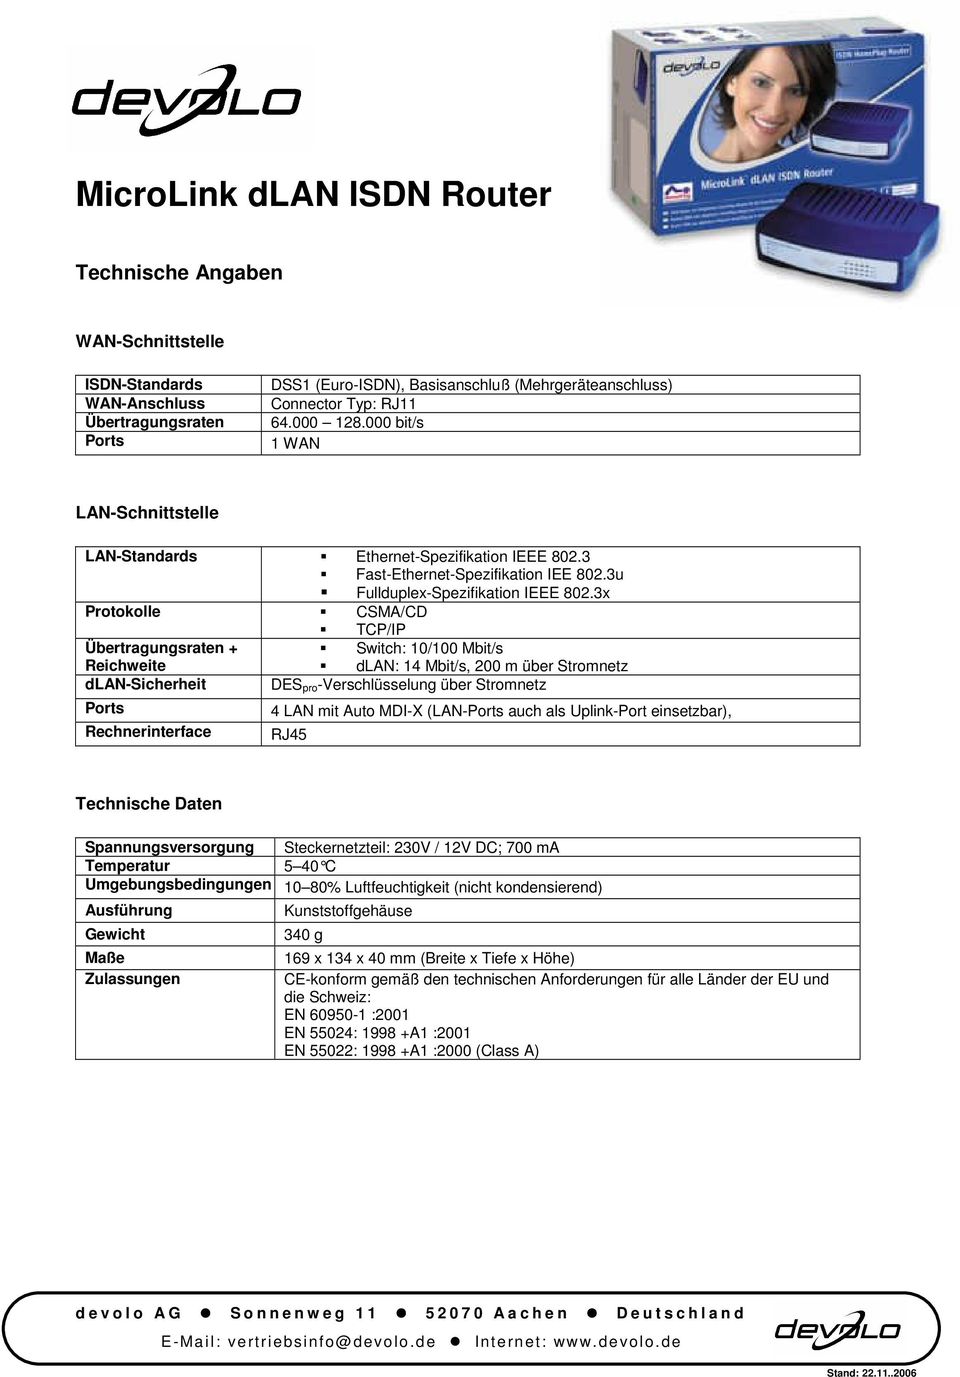 3x Protokolle CSMA/CD TCP/IP Übertragungsraten + Switch: 10/100 Mbit/s Reichweite dlan: 14 Mbit/s, 200 m über Stromnetz dlan-sicherheit DES pro-verschlüsselung über Stromnetz Ports Rechnerinterface 4